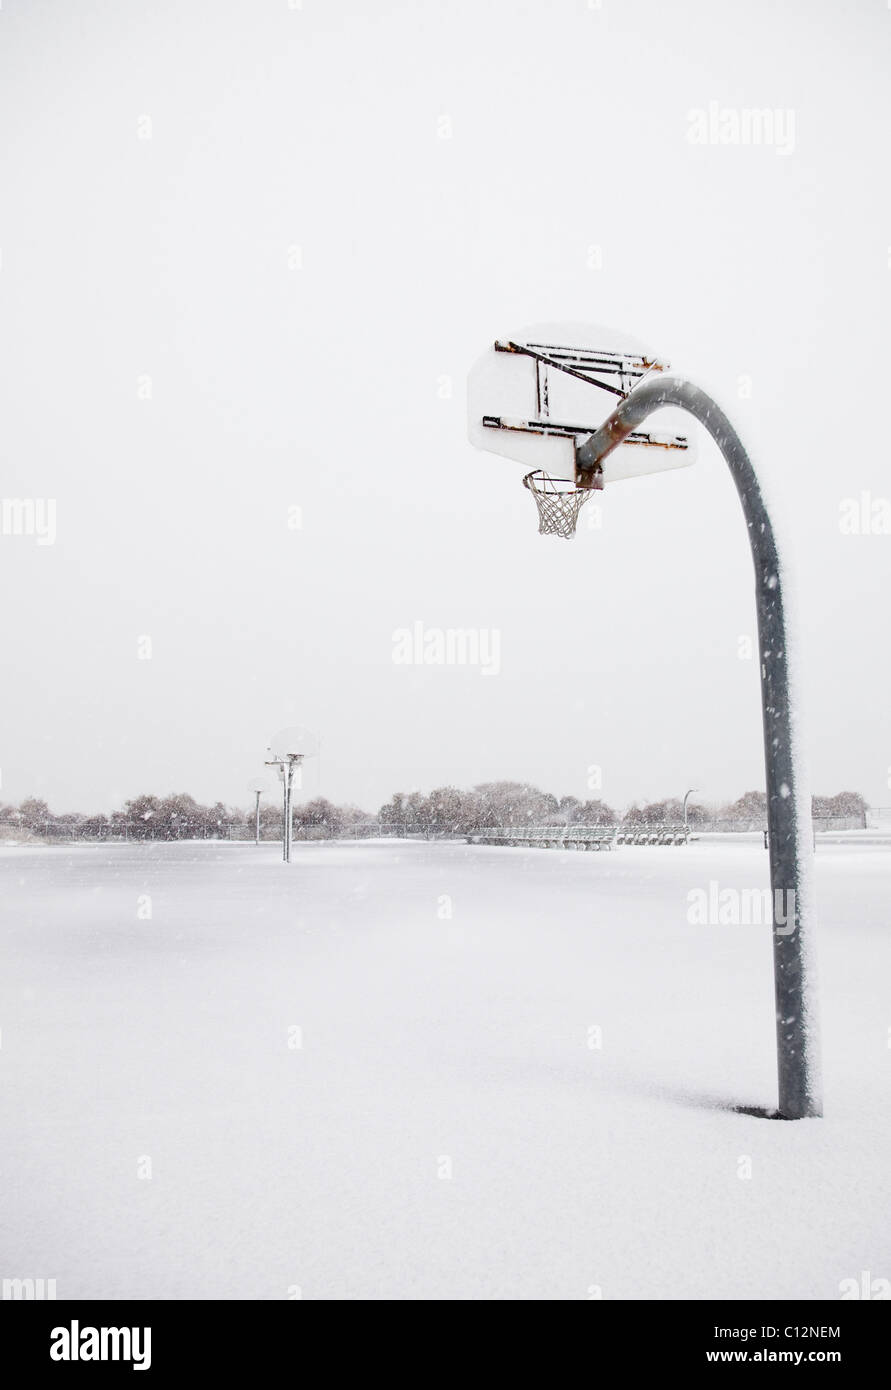 USA, New York State, Rockaway Beach, panier de basket-ball en hiver Banque D'Images